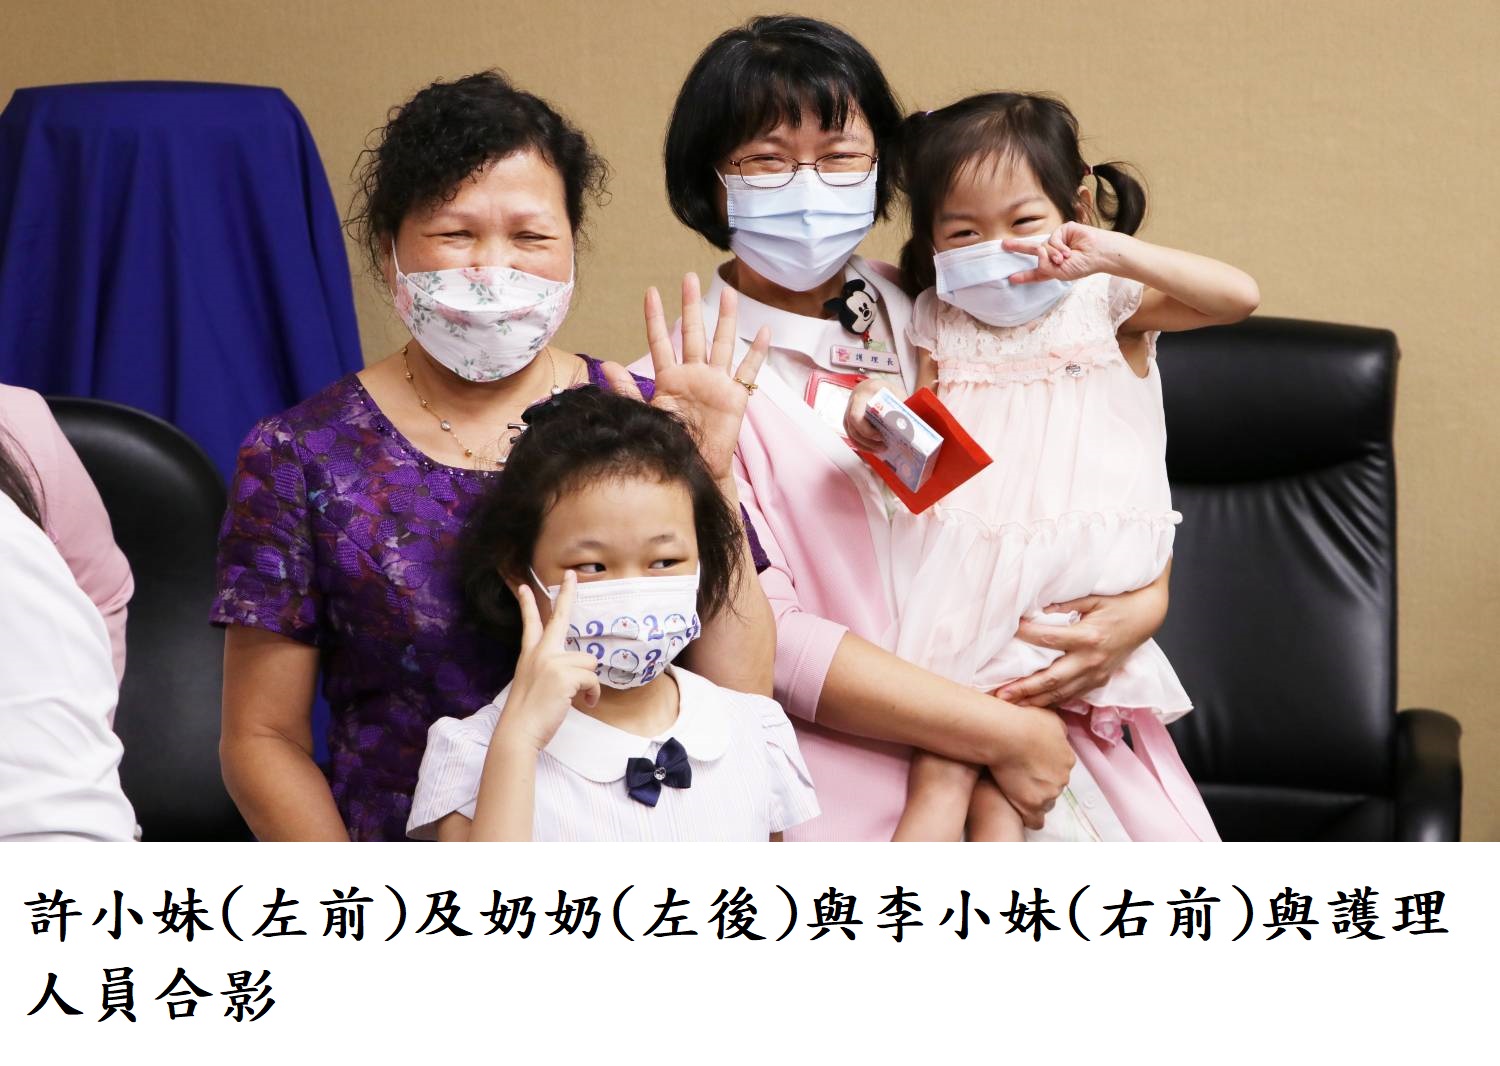 Bệnh viện Đa khoa Cựu chiến binh Đài Bắc đã thực hiện thành công ca ghép thận của trẻ 1 tuổi cho nữ bệnh nhi họ Lý 4 tuổi và nữ bệnh nhi họ Hứa 9 tuổi. (Nguồn ảnh: Bệnh viện Đa khoa Cựu chiến binh Đài Bắc)